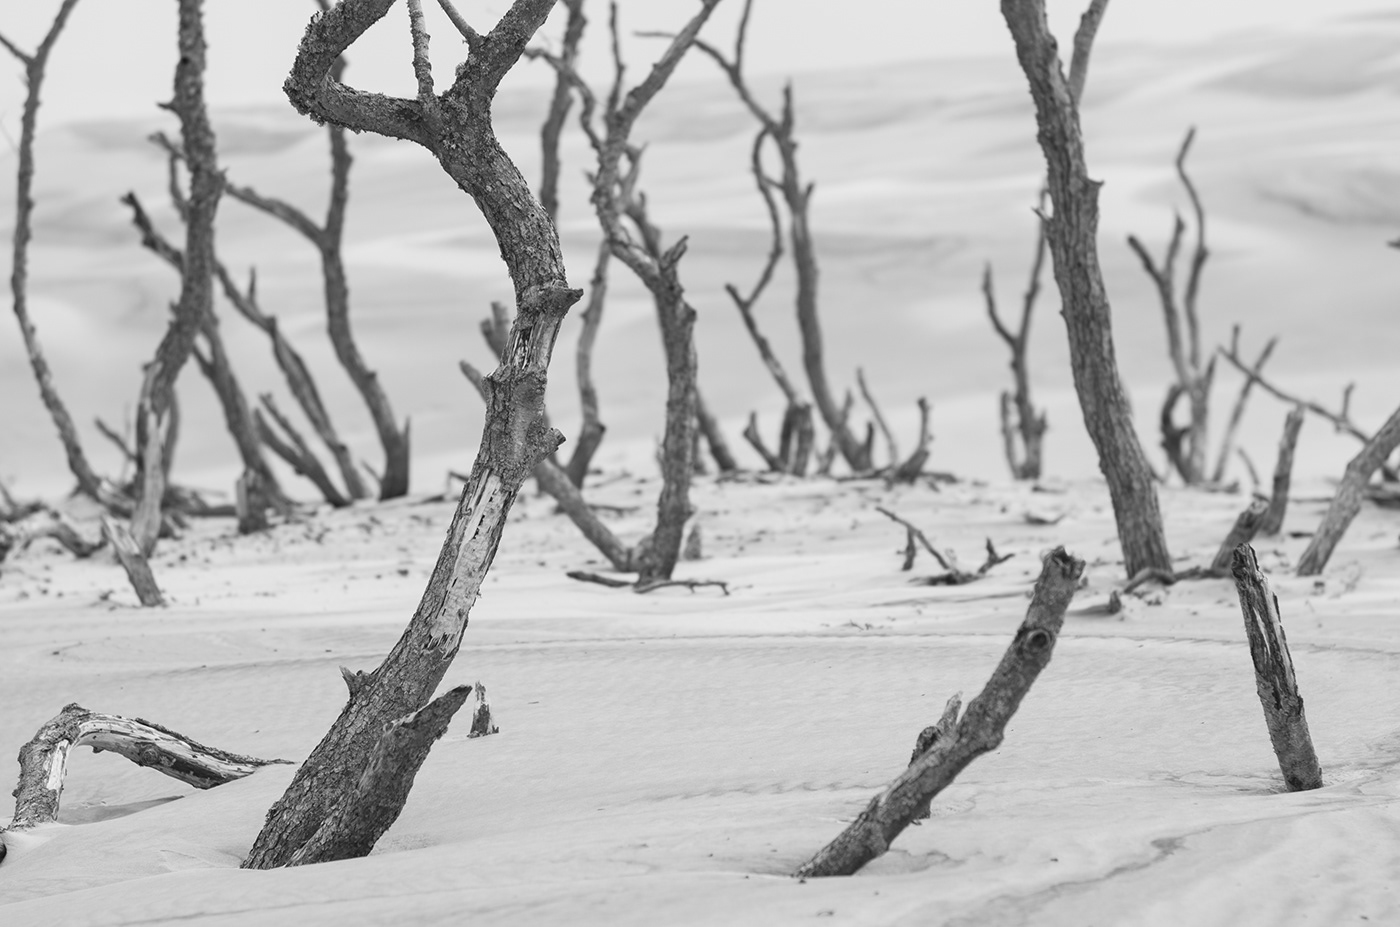 dunes poland sand Seaside blackandwhit b&w sea monochrome seascape